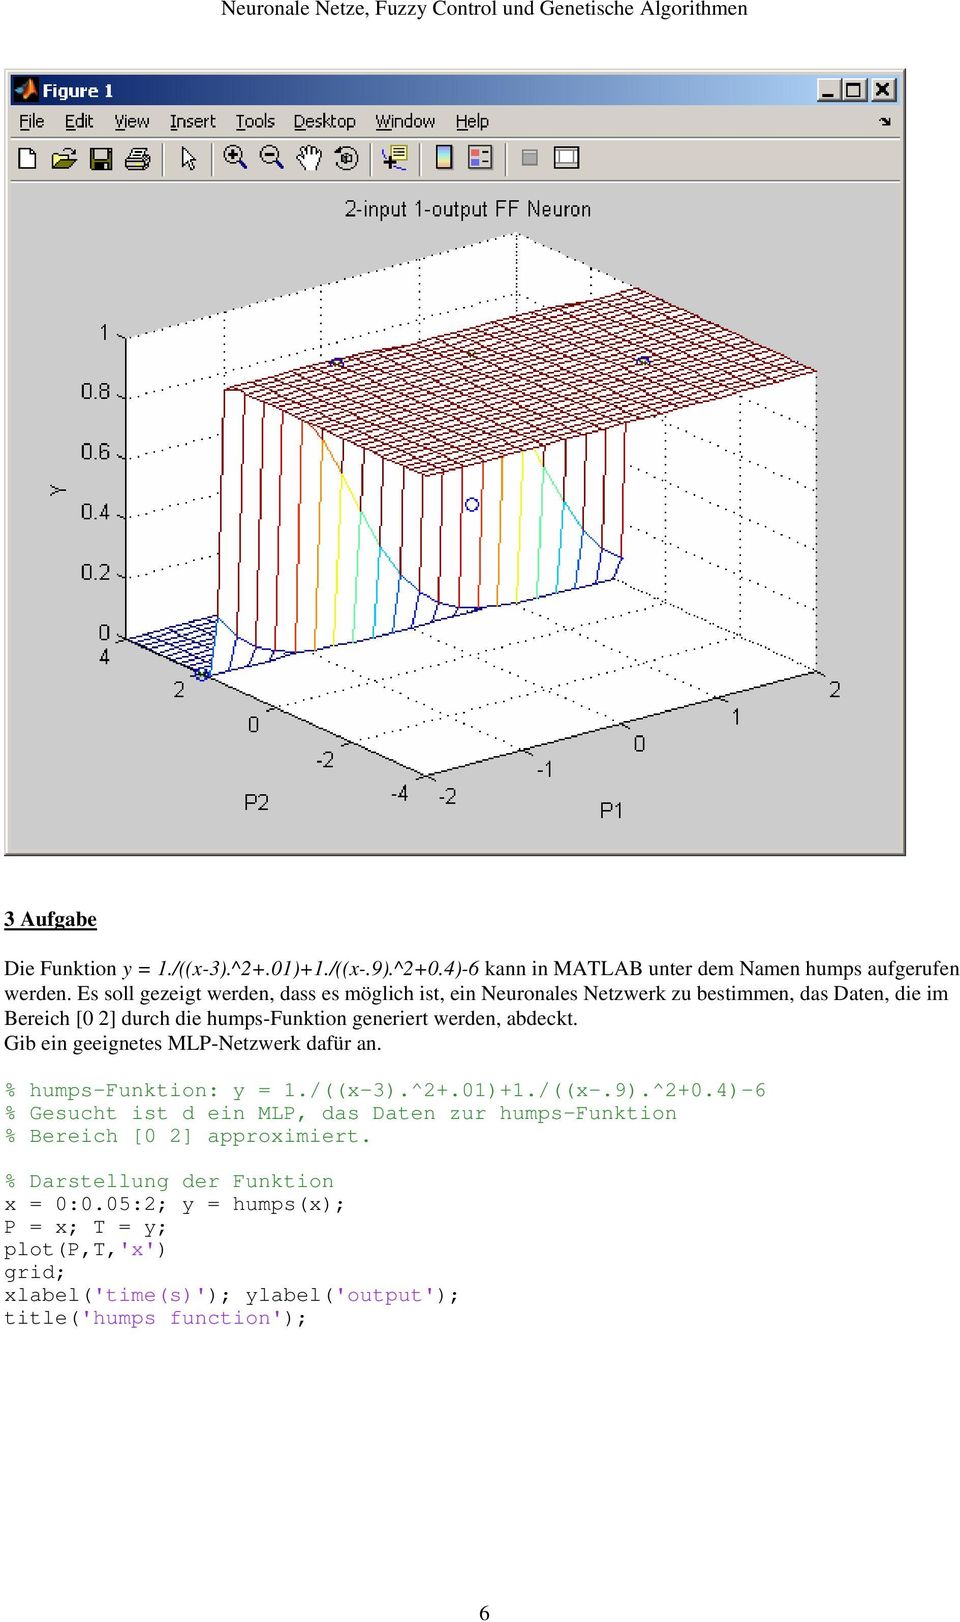 werden, abdeckt. Gib ein geeignetes MLP-Netzwerk dafür an. % humps-funktion: y = 1./((x-3).^2+.01)+1./((x-.9).^2+0.